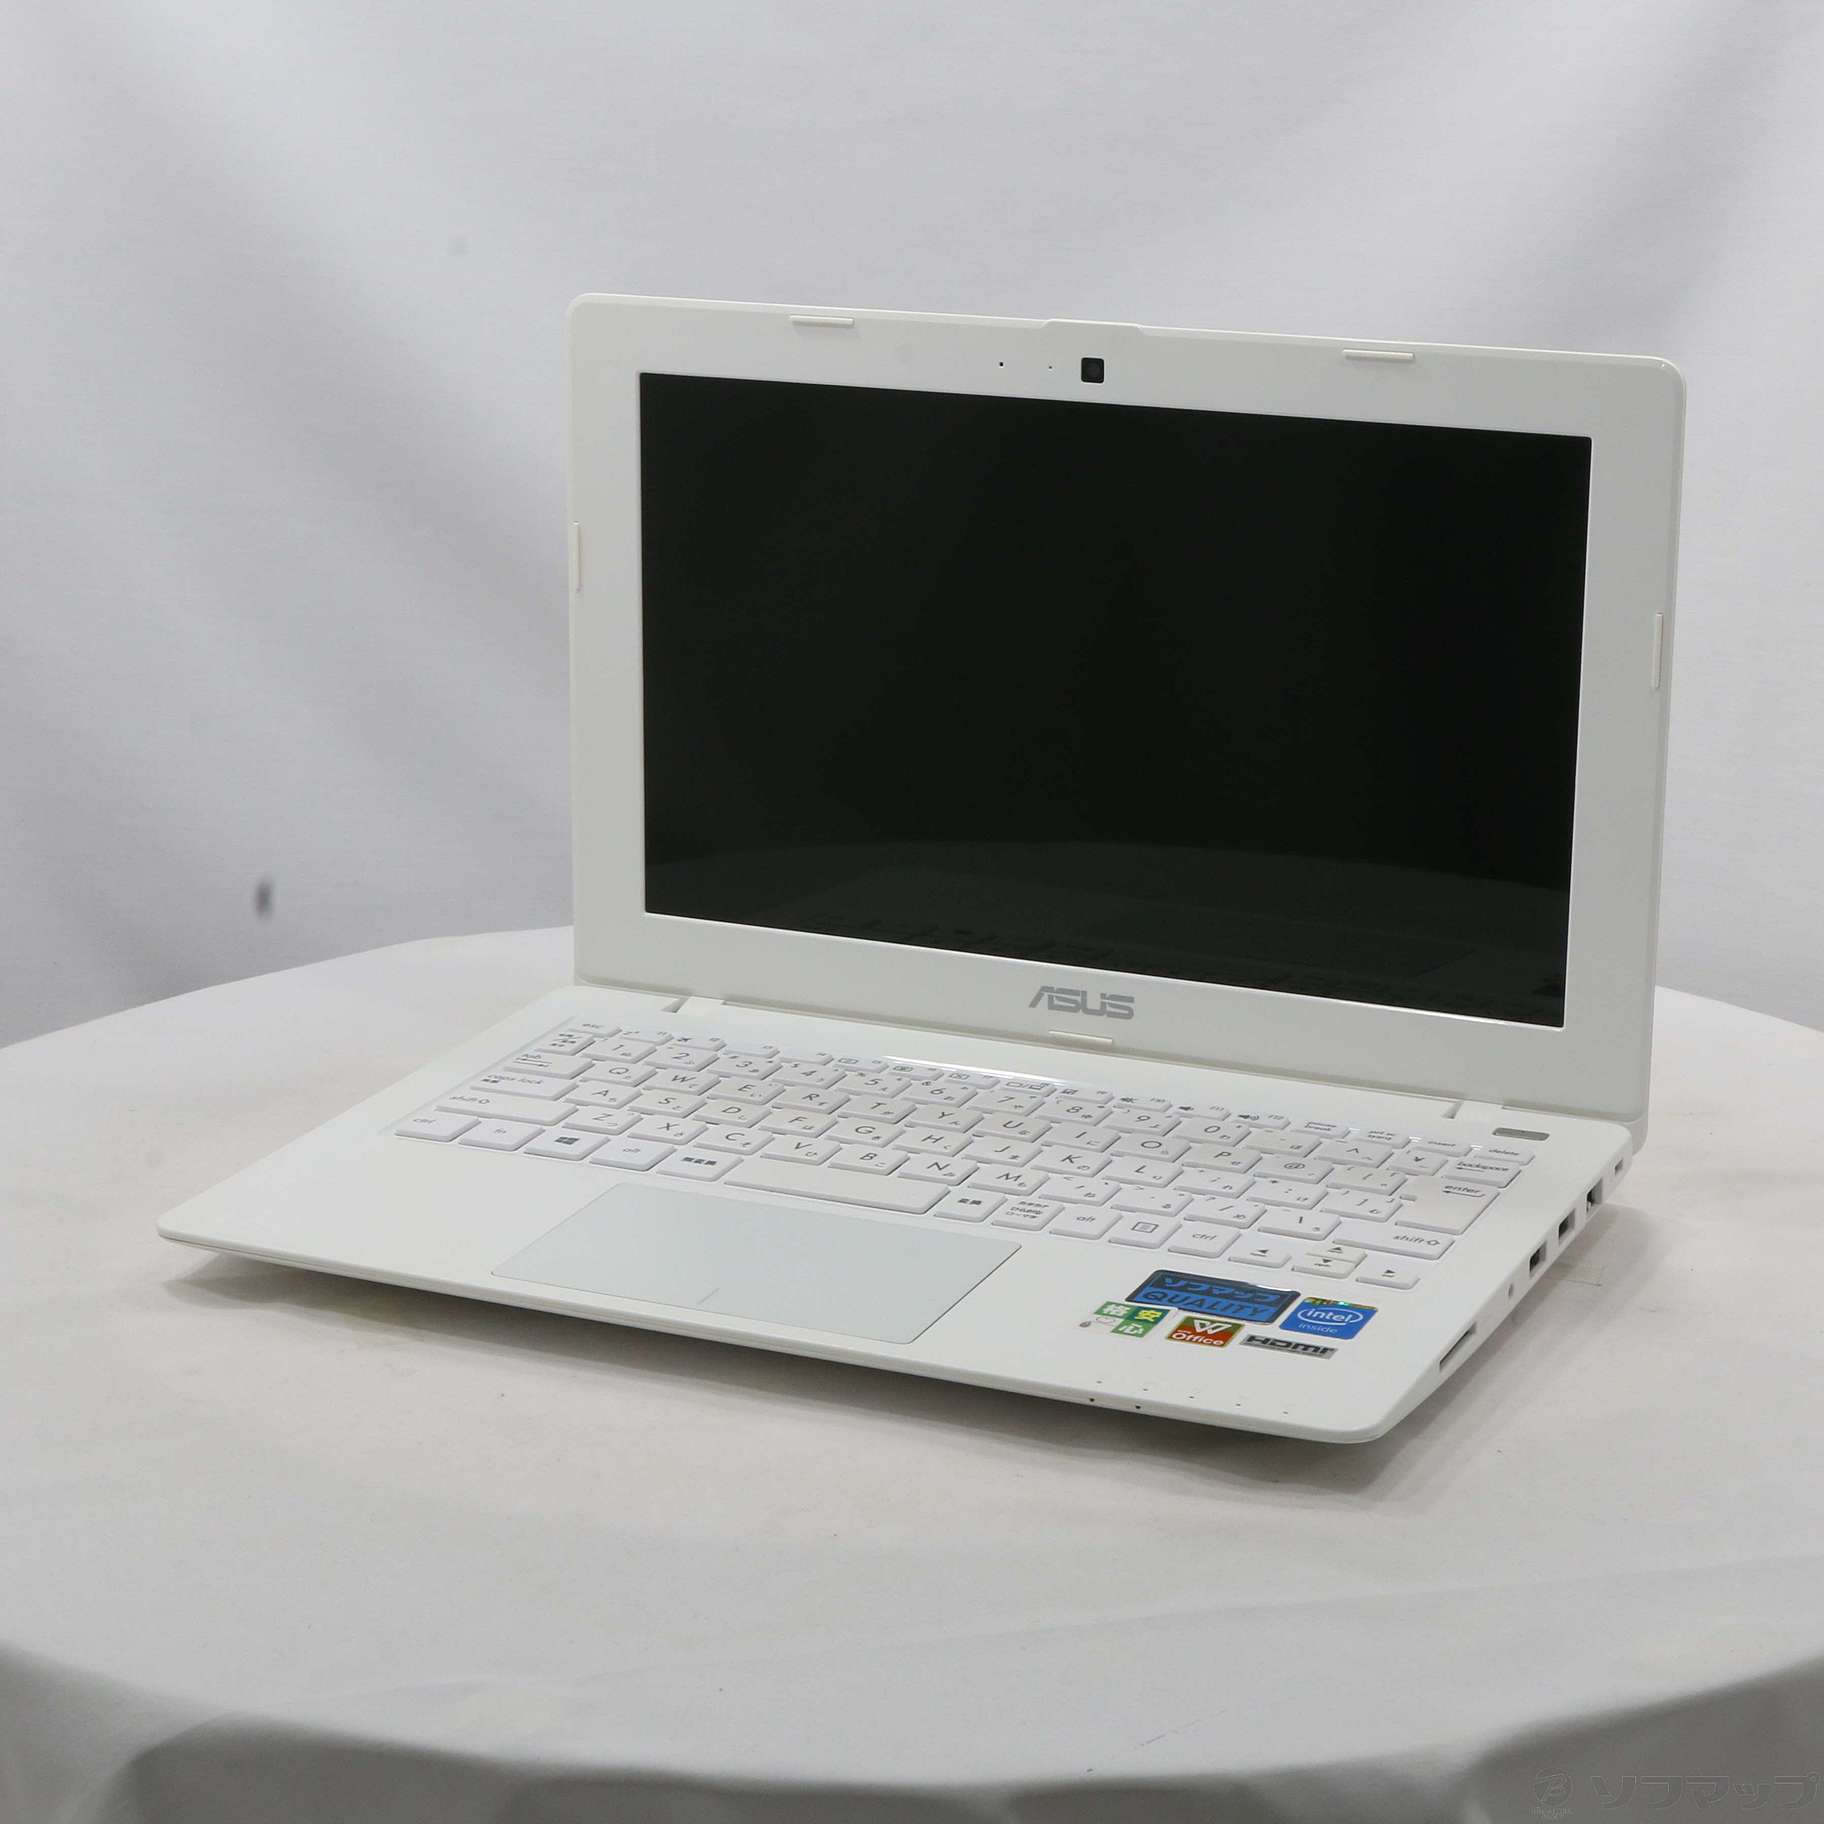 格安安心パソコン ASUS X200MA X200MA-KXWHITE ホワイト